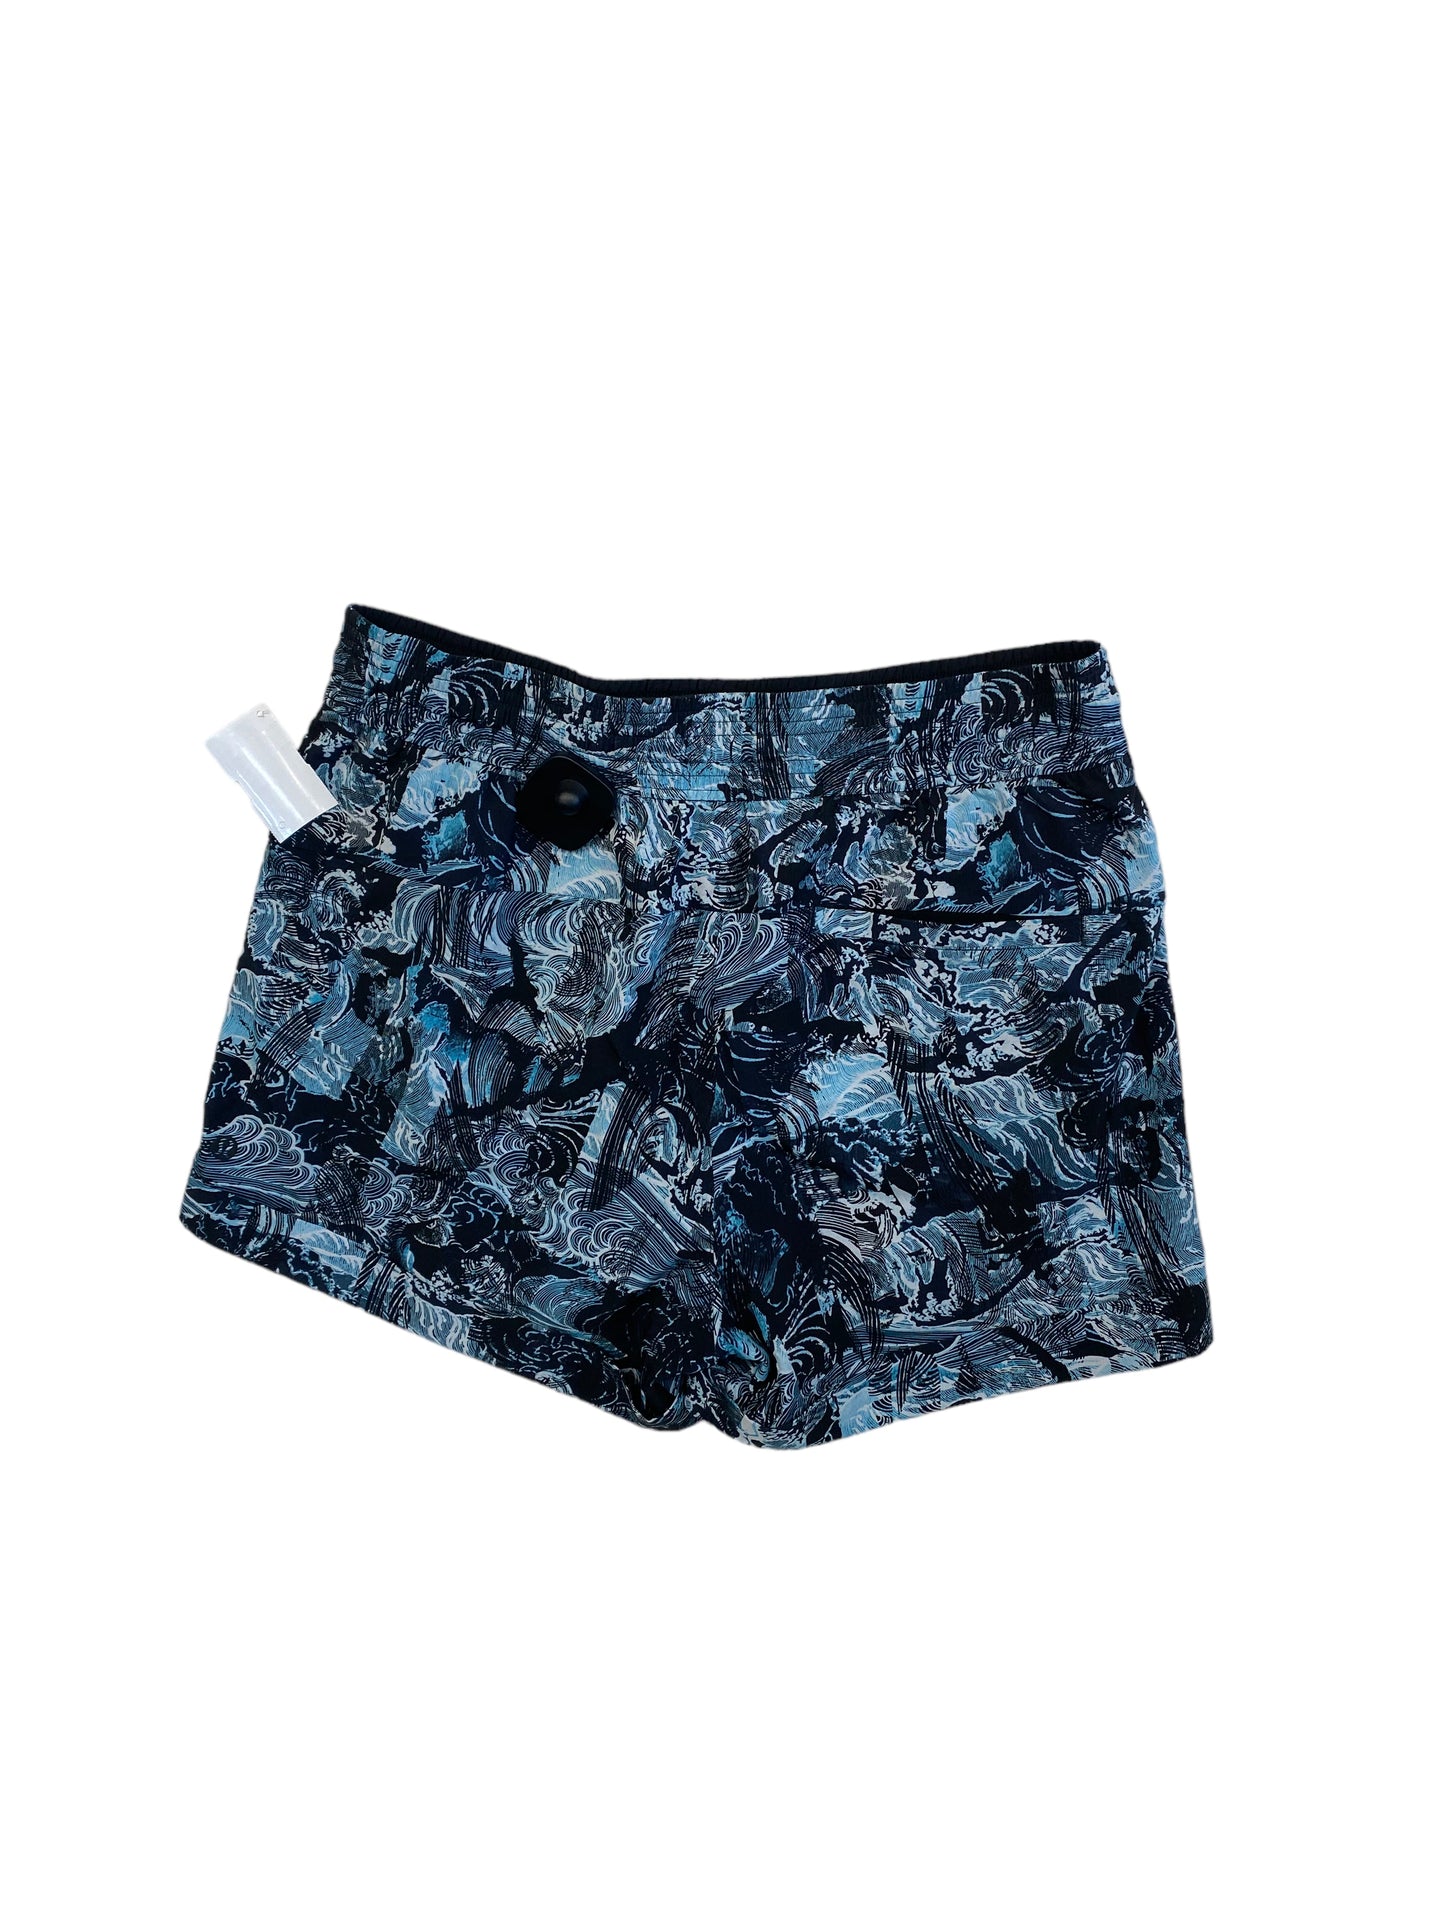 Black & Blue Athletic Shorts Lululemon, Size 8